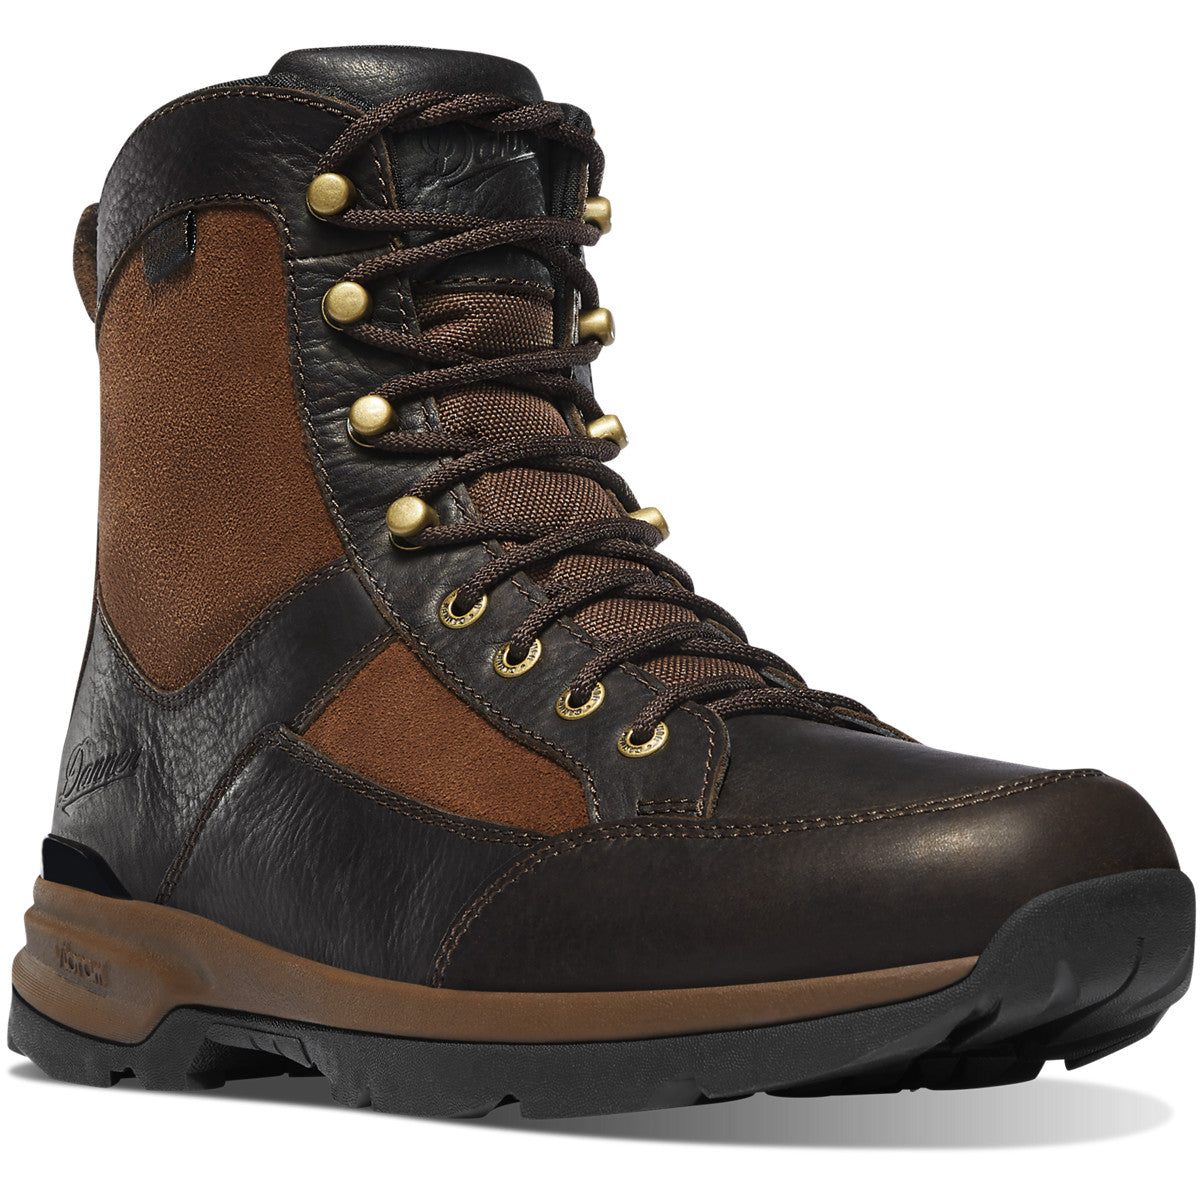 Danner Men's Recurve 7" Waterproof Hunt Boot - Brown - 47611 7 / Medium / Brown - Overlook Boots